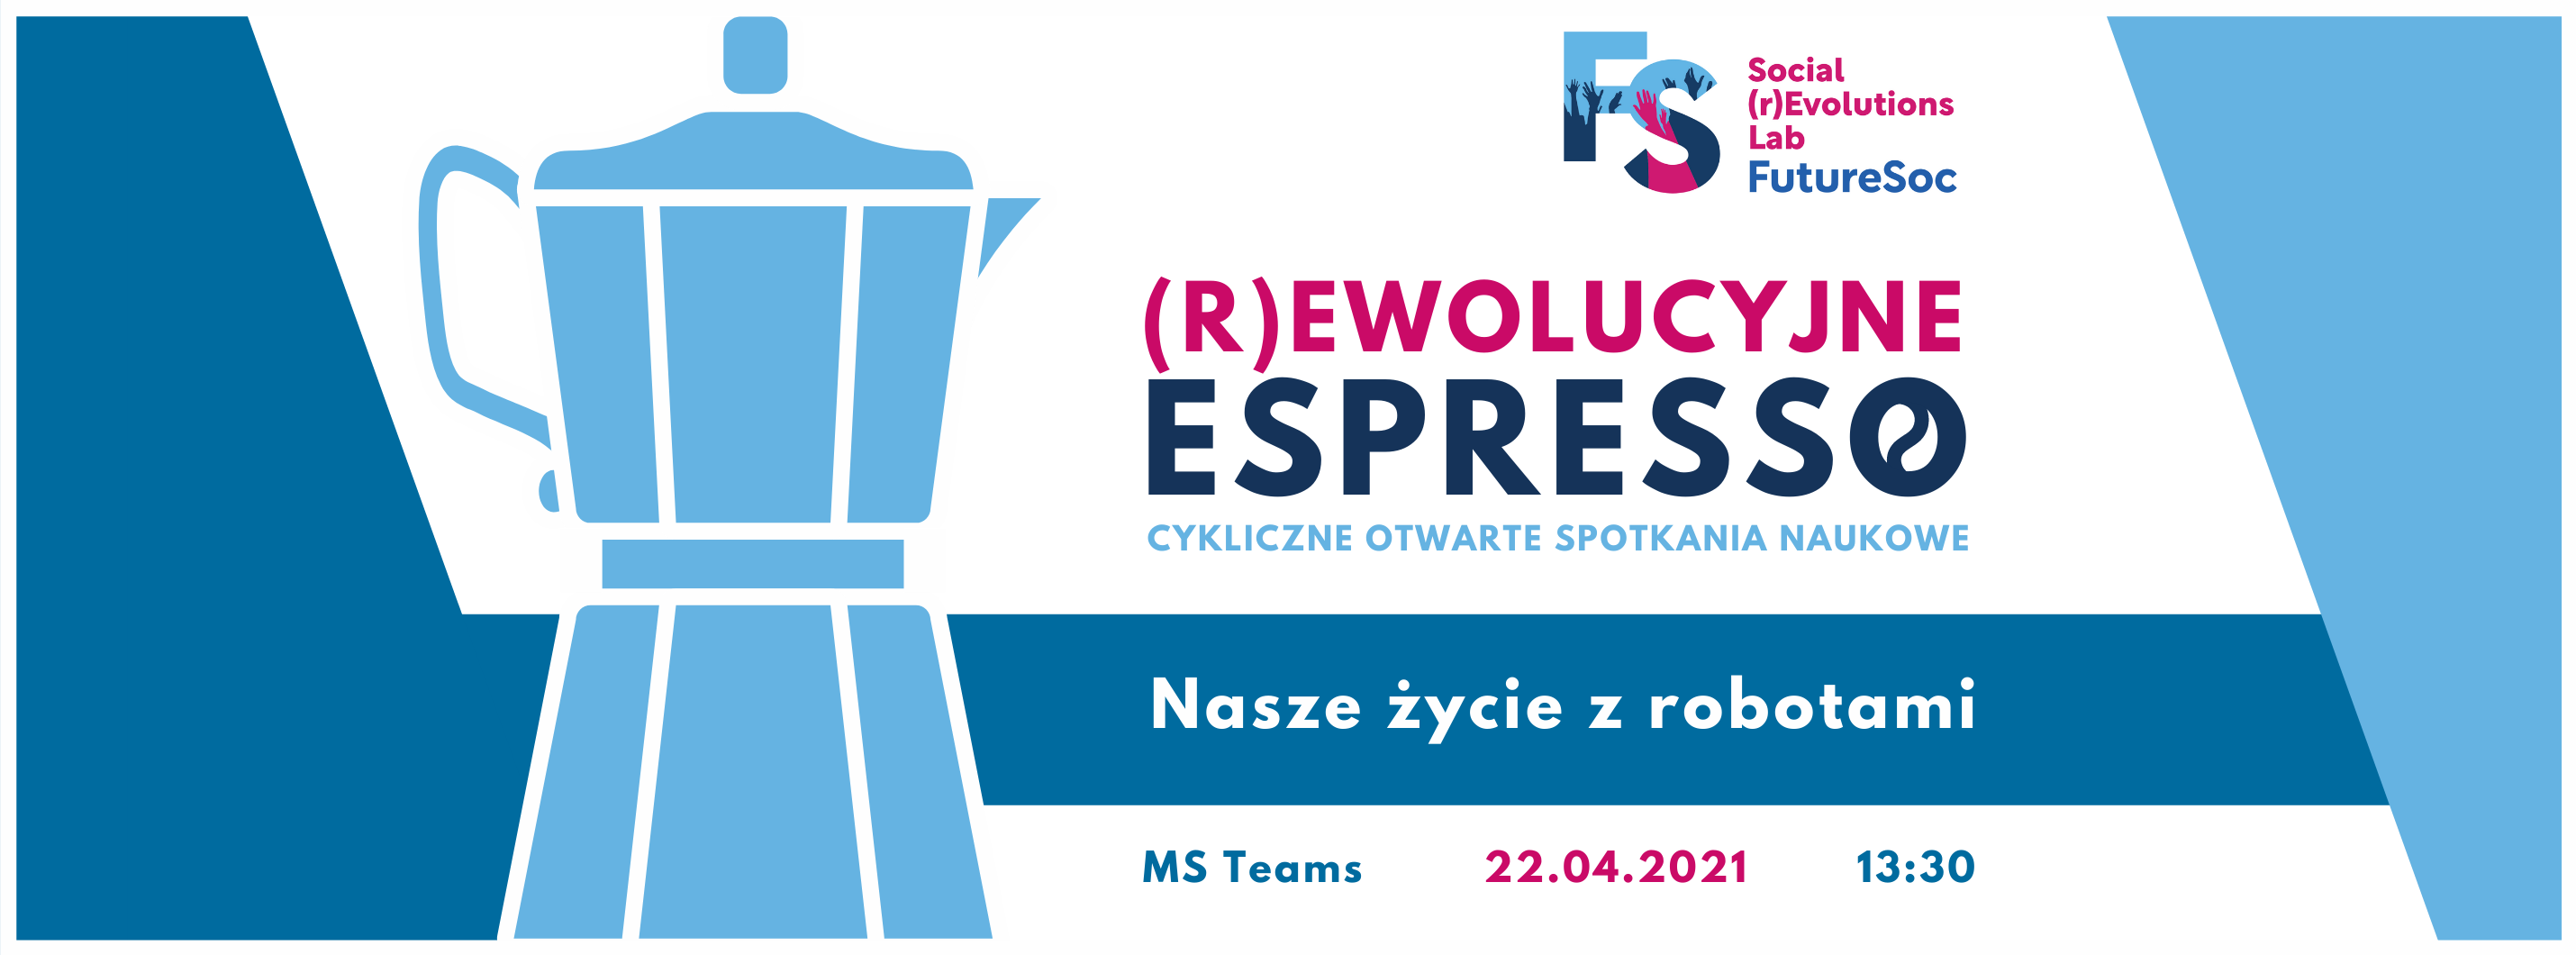 Baner dekoracyjny (r)Ewolucyjne Espresso z kawiarką i tekstem "cykliczne otwarte spotkania naukowe. Nasze życie z robotami. MS teams 22.04.2021, 13:30"